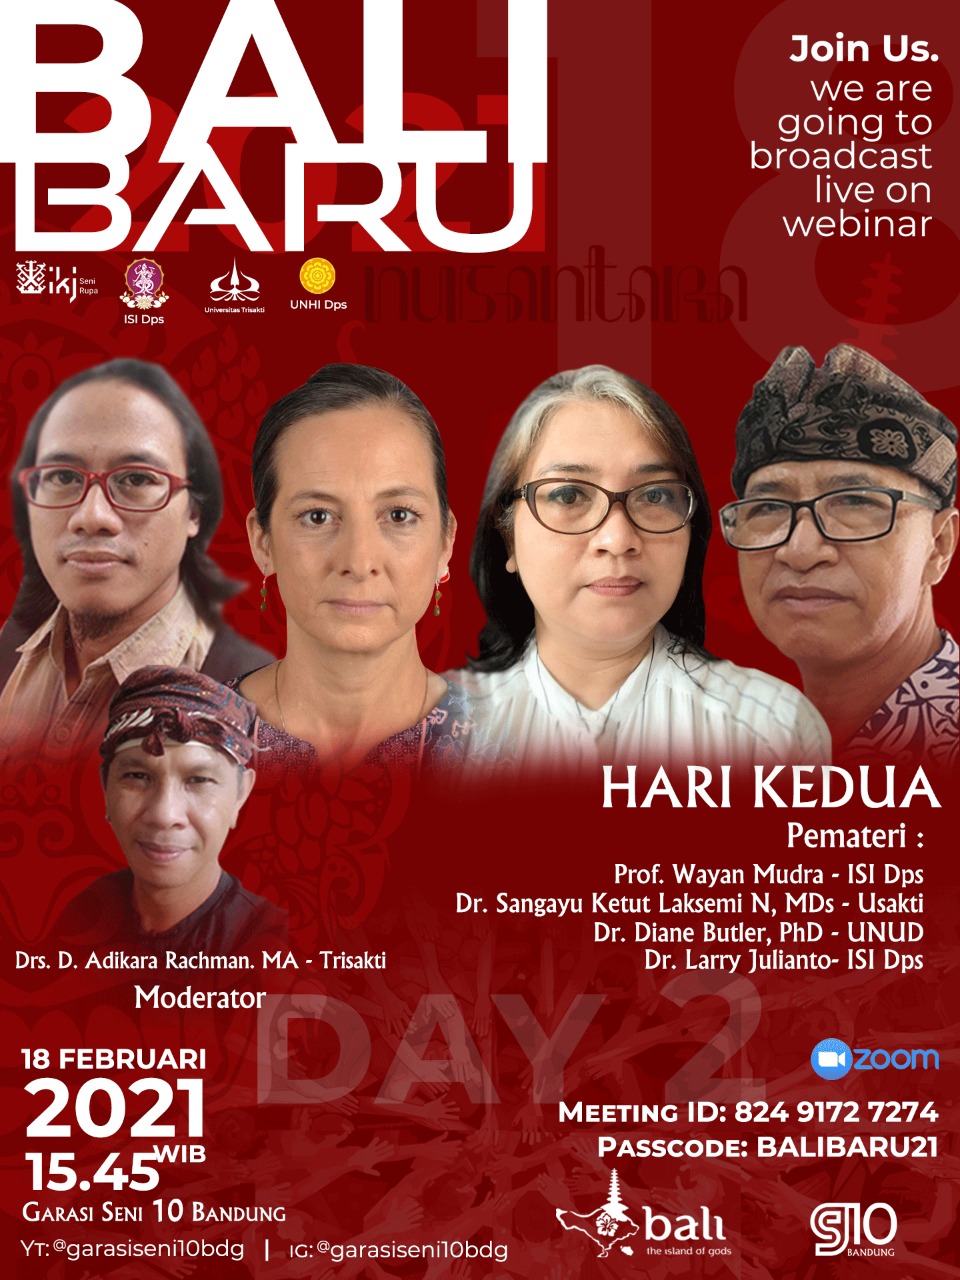 Bali Baru Hari Kedua 2021 Nusantara Garasi Seni 10 Bandung